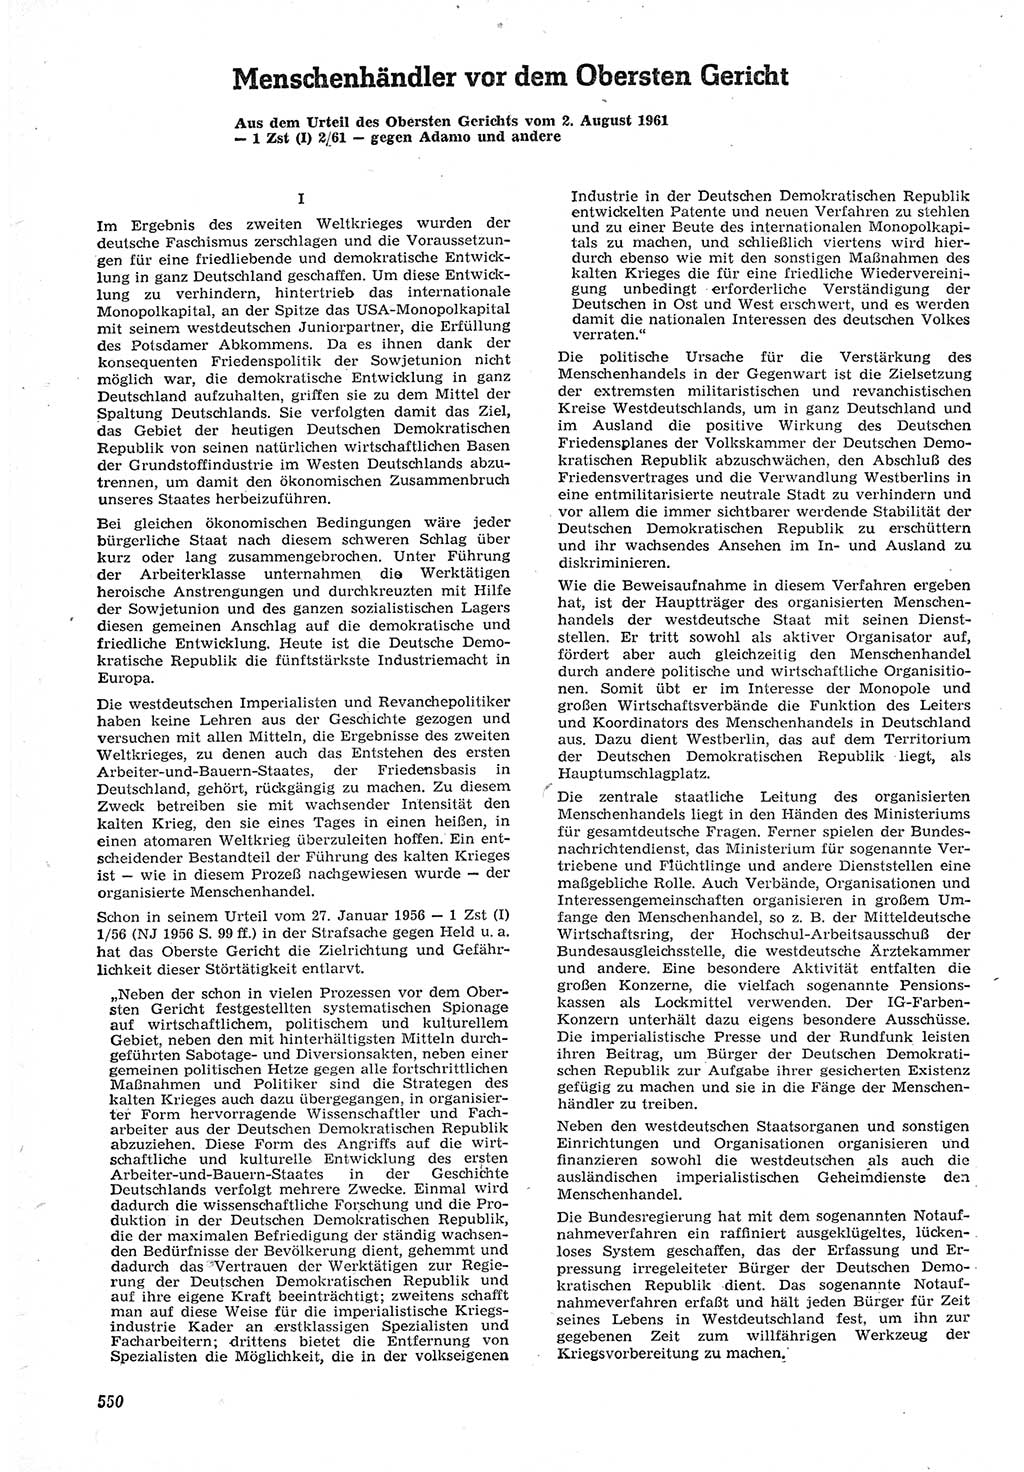 Neue Justiz (NJ), Zeitschrift für Recht und Rechtswissenschaft [Deutsche Demokratische Republik (DDR)], 15. Jahrgang 1961, Seite 550 (NJ DDR 1961, S. 550)